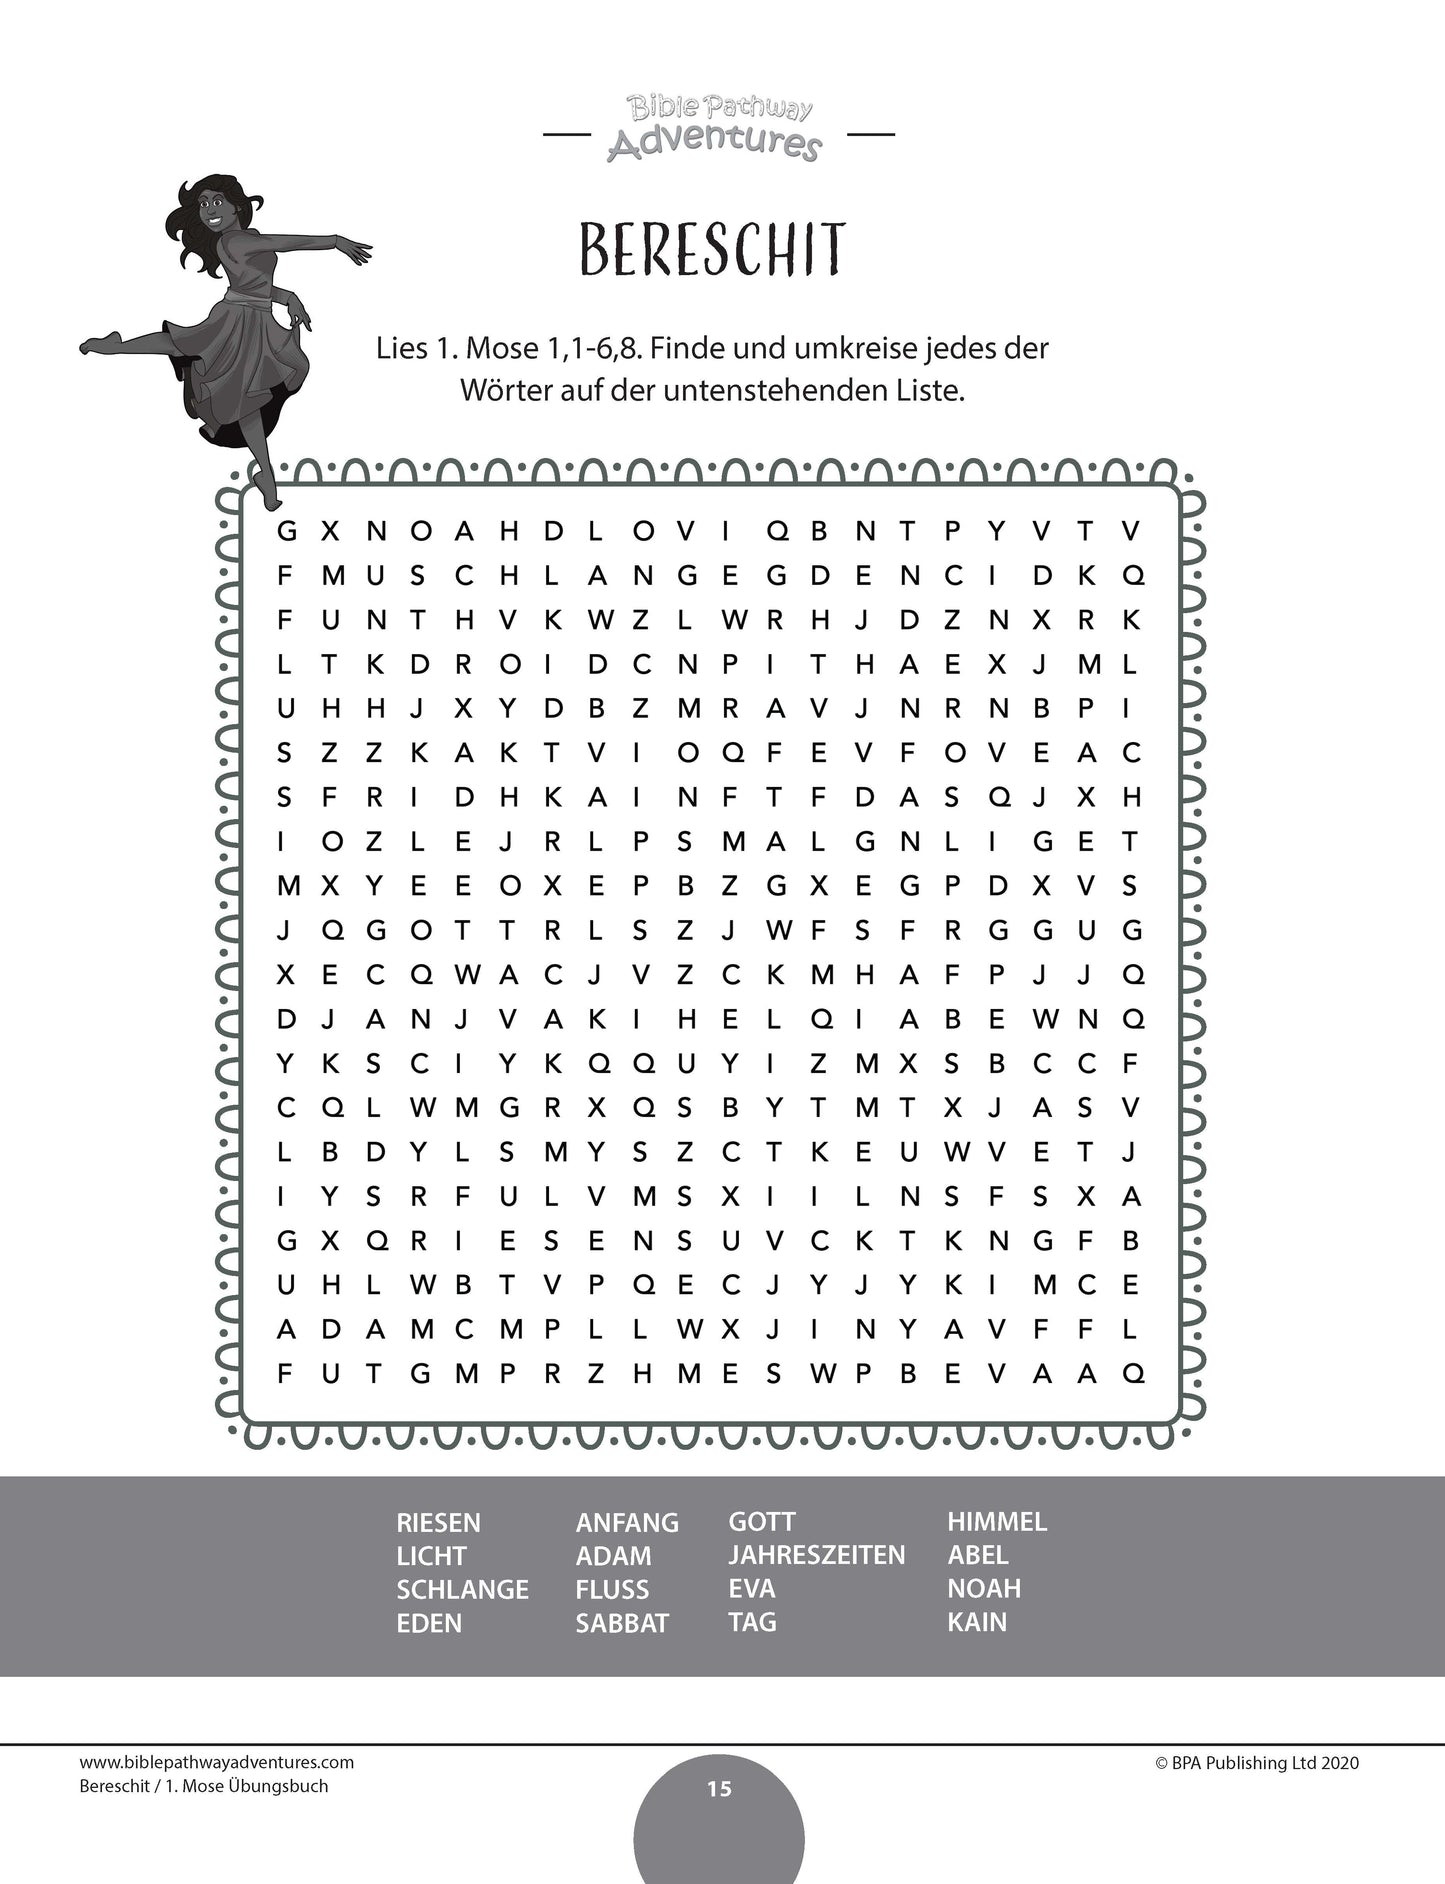 Bereschit / 1. Mose Übungsbuch